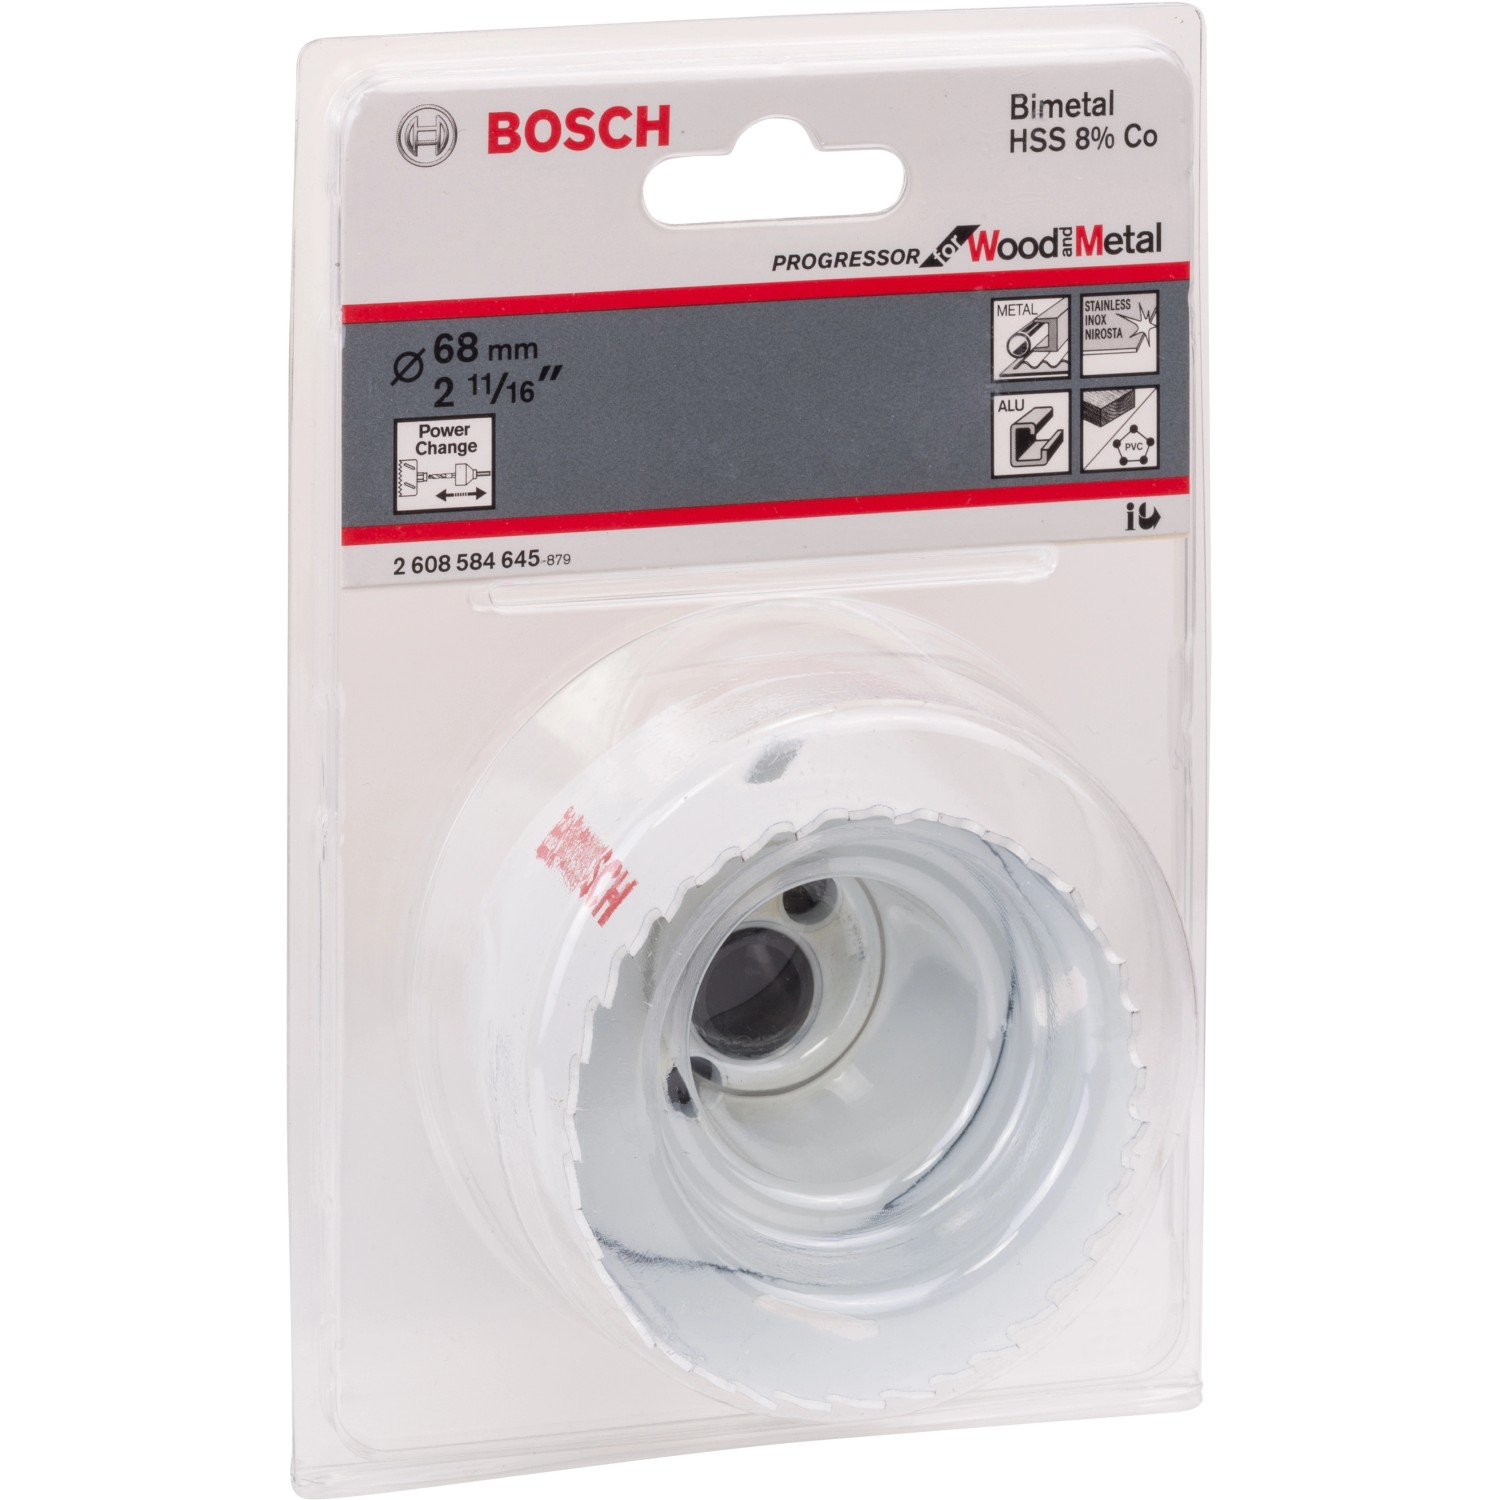 Bosch Lochsäge Pro Progressor for Ø Metal kaufen Wood mm and OBI 68 bei